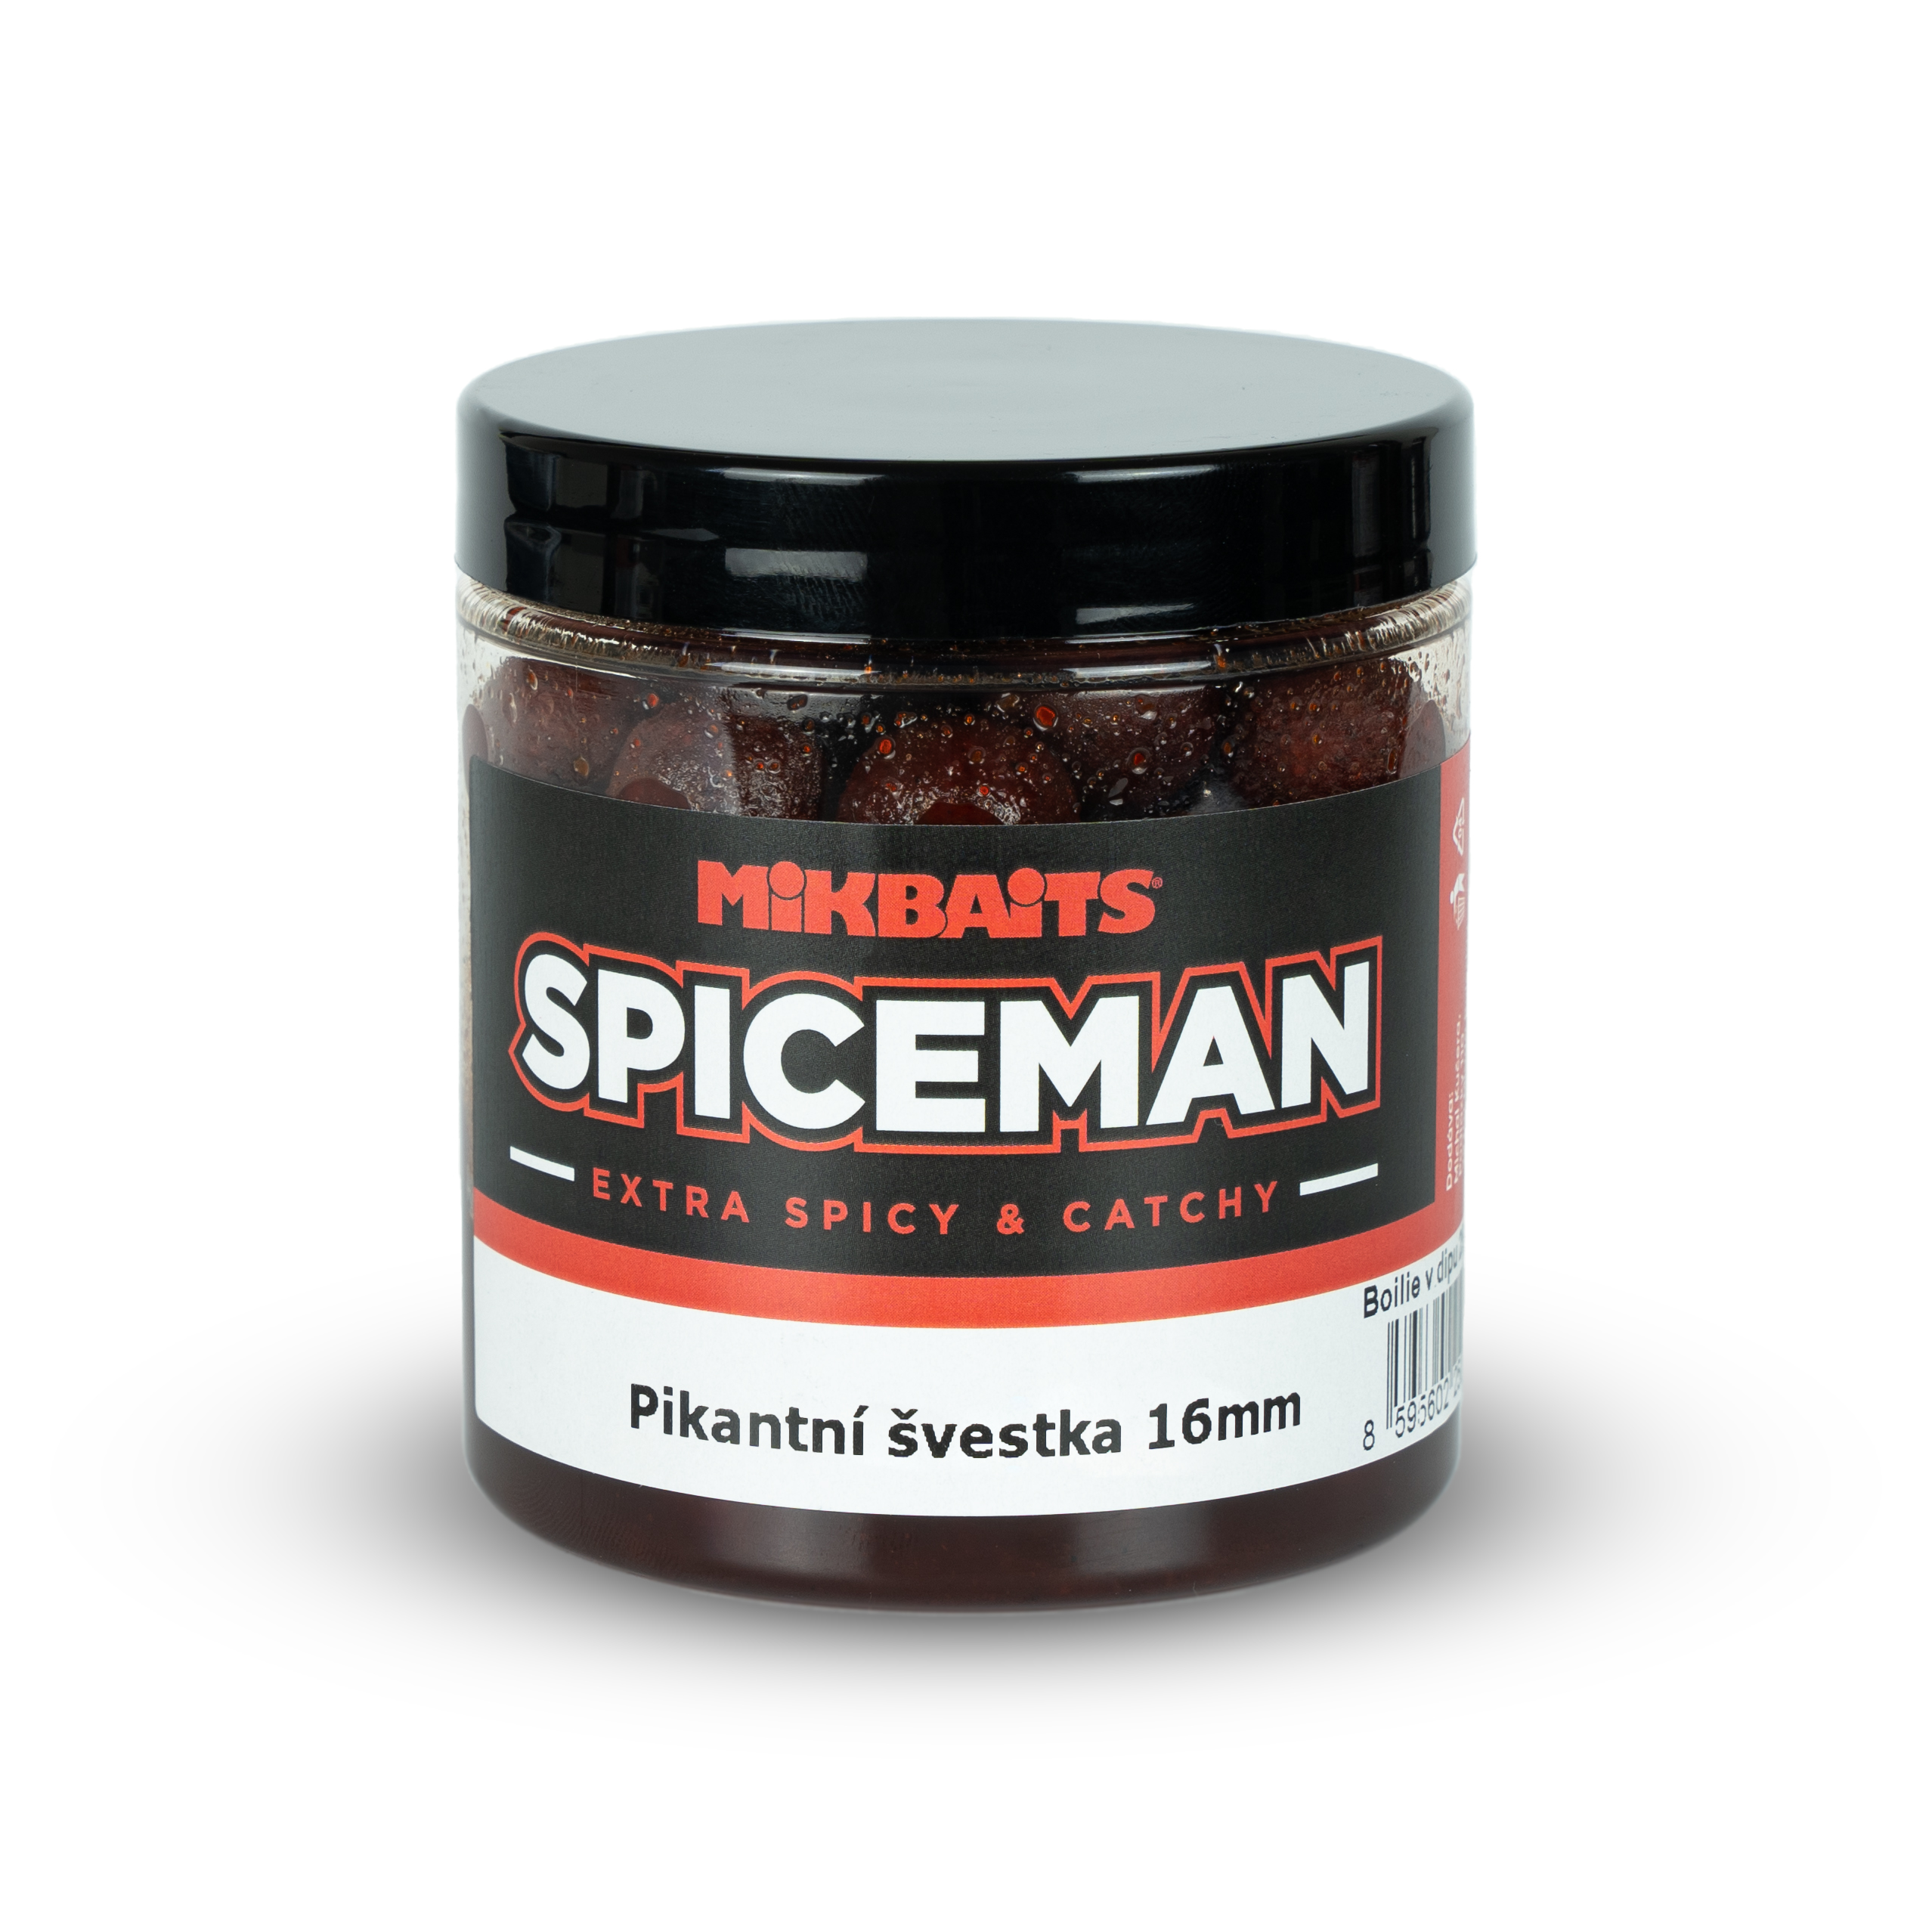 Boilie v dipu Mikbaits Spiceman 250ml 16mm Pikantní švestka